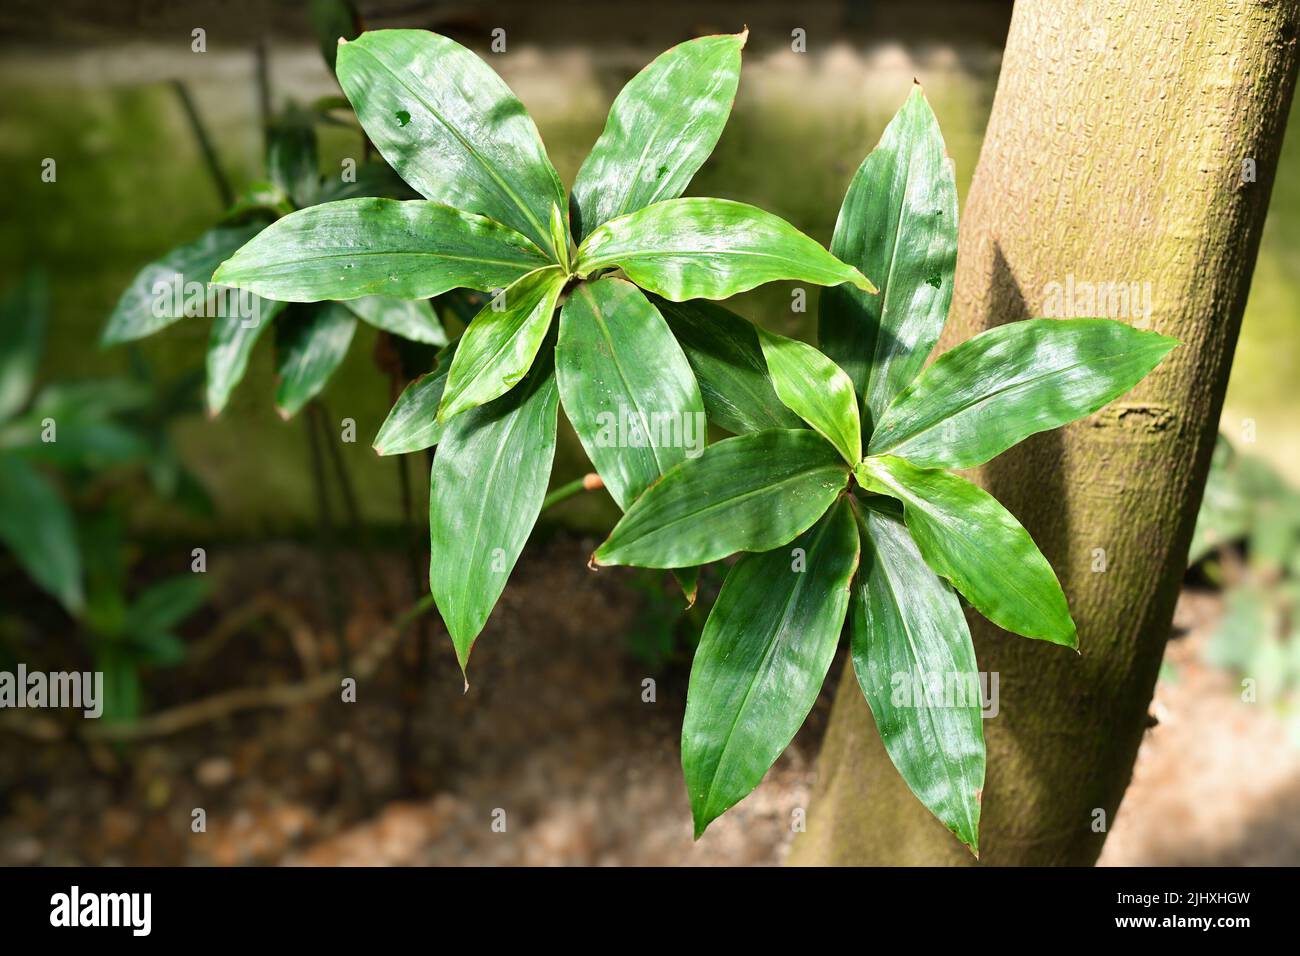 Leaves of tropical Queen's Spiderwort plant. Botanic name 'Dichorisandra Reginae' Stock Photo